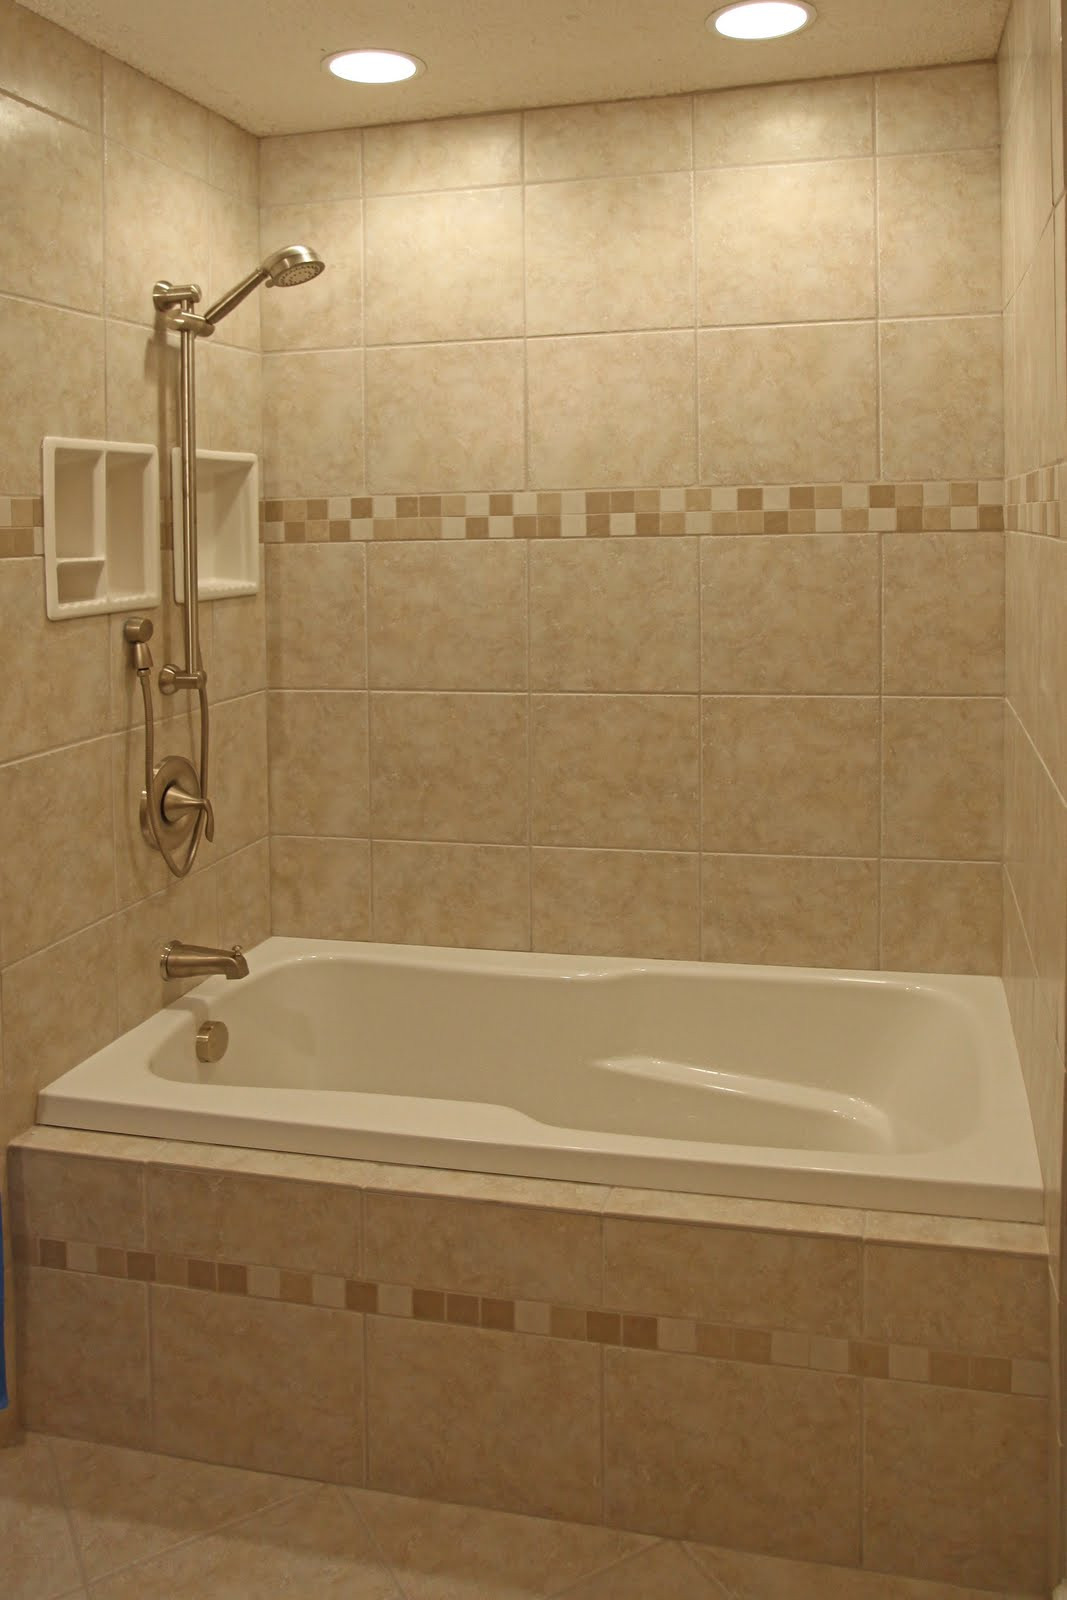 Bathroom Shower Floor Tile Ideas
 Bathroom Remodeling Design Ideas Tile Shower Niches